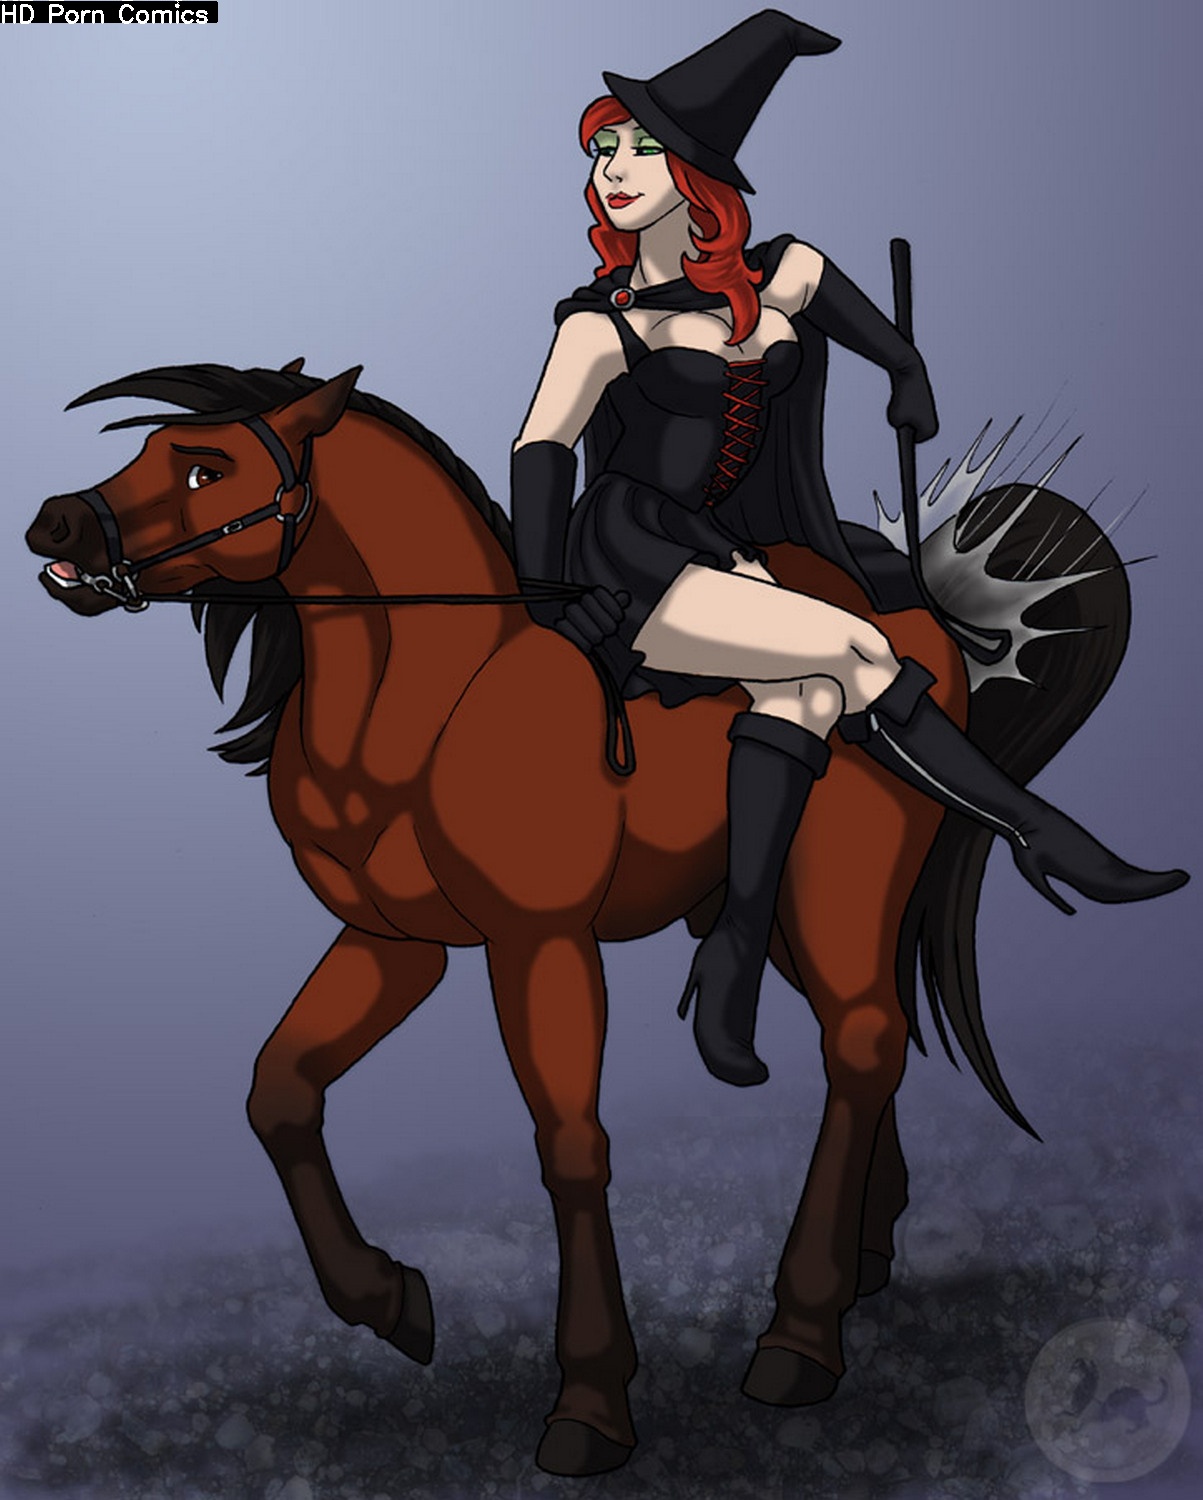 Horse And Rider comic porn â€“ HD Porn Comics